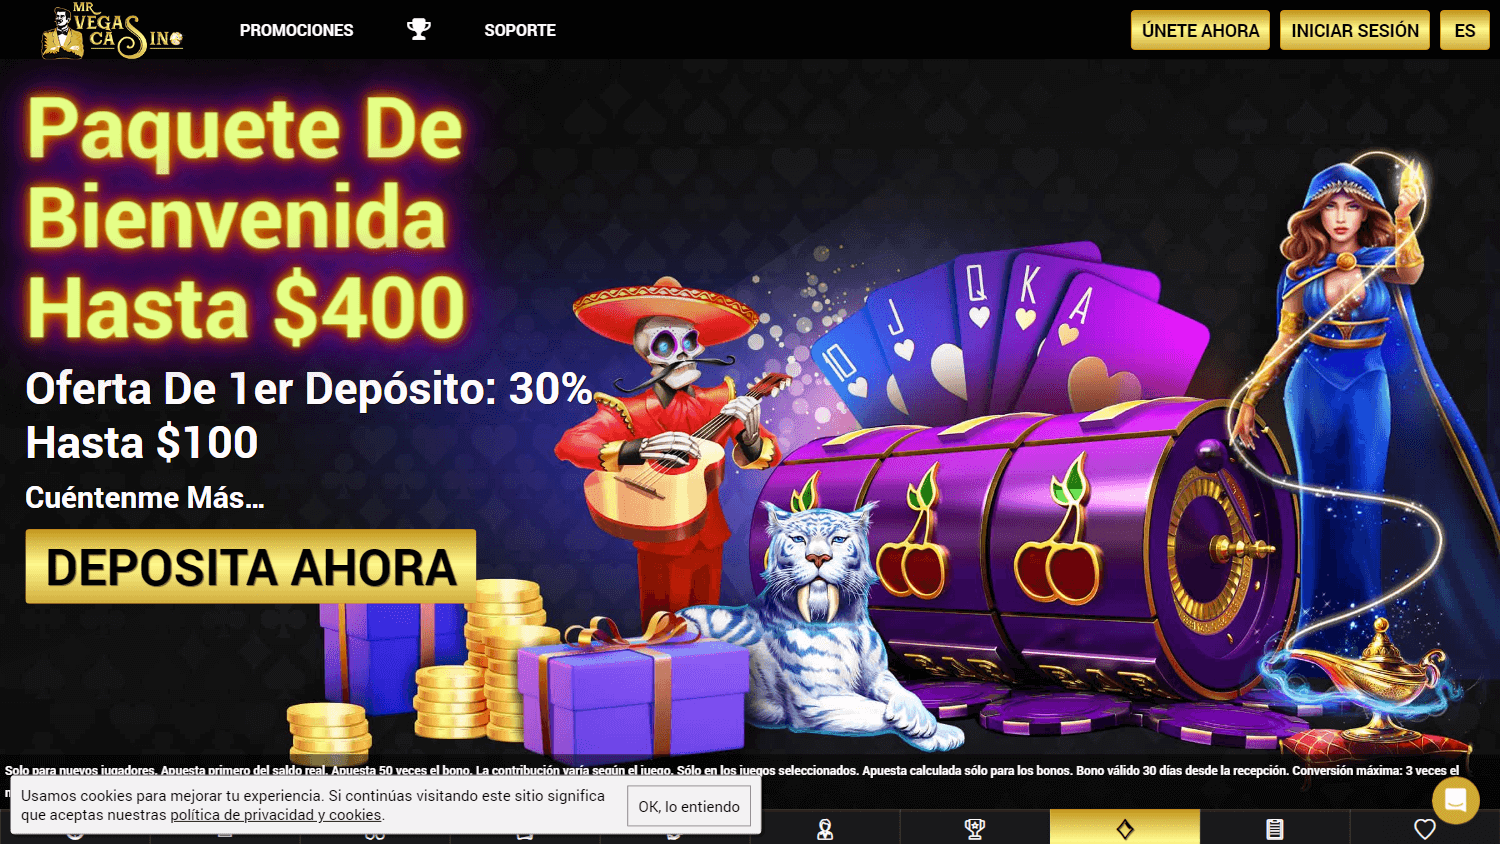 mrvegas_casino_game_gallery_desktop